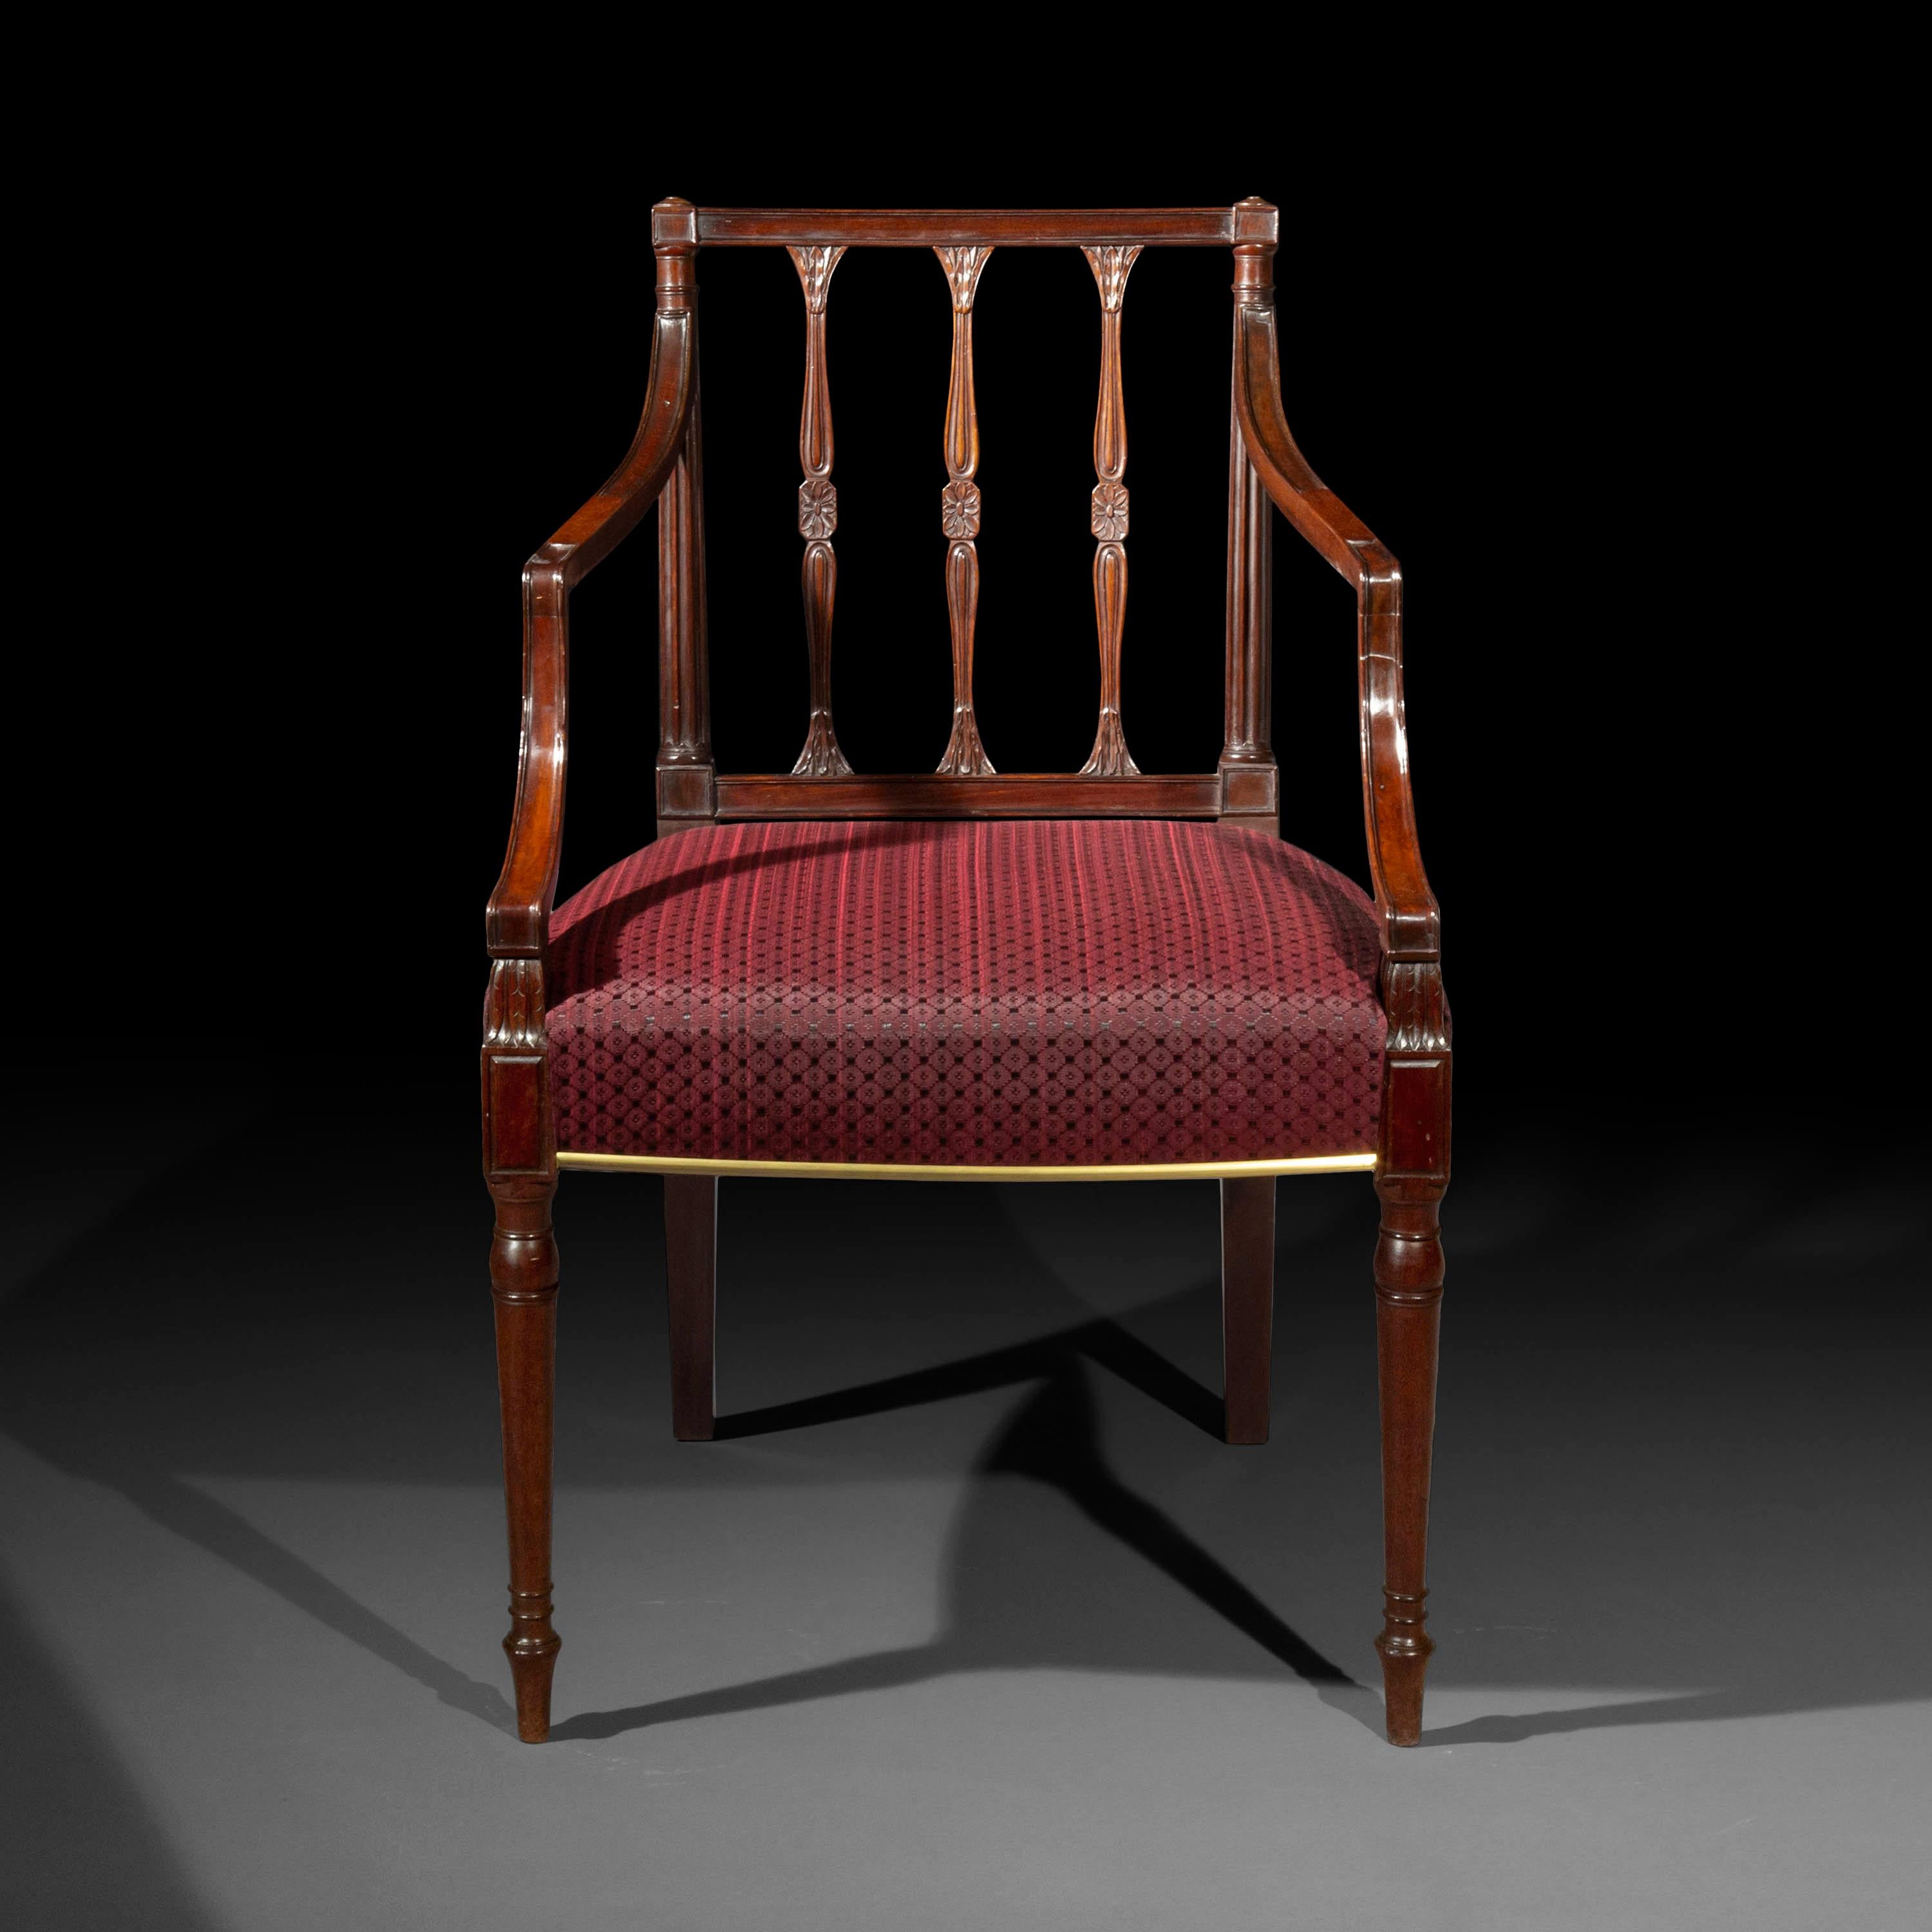 Une paire de fauteuils ou de chaises coudées d'époque George III extrêmement élégante et de superbe qualité. Six chaises d'appoint sont disponibles séparément.
Anglais, vers 1780

Pourquoi nous les aimons :
Modèle merveilleusement élégant,